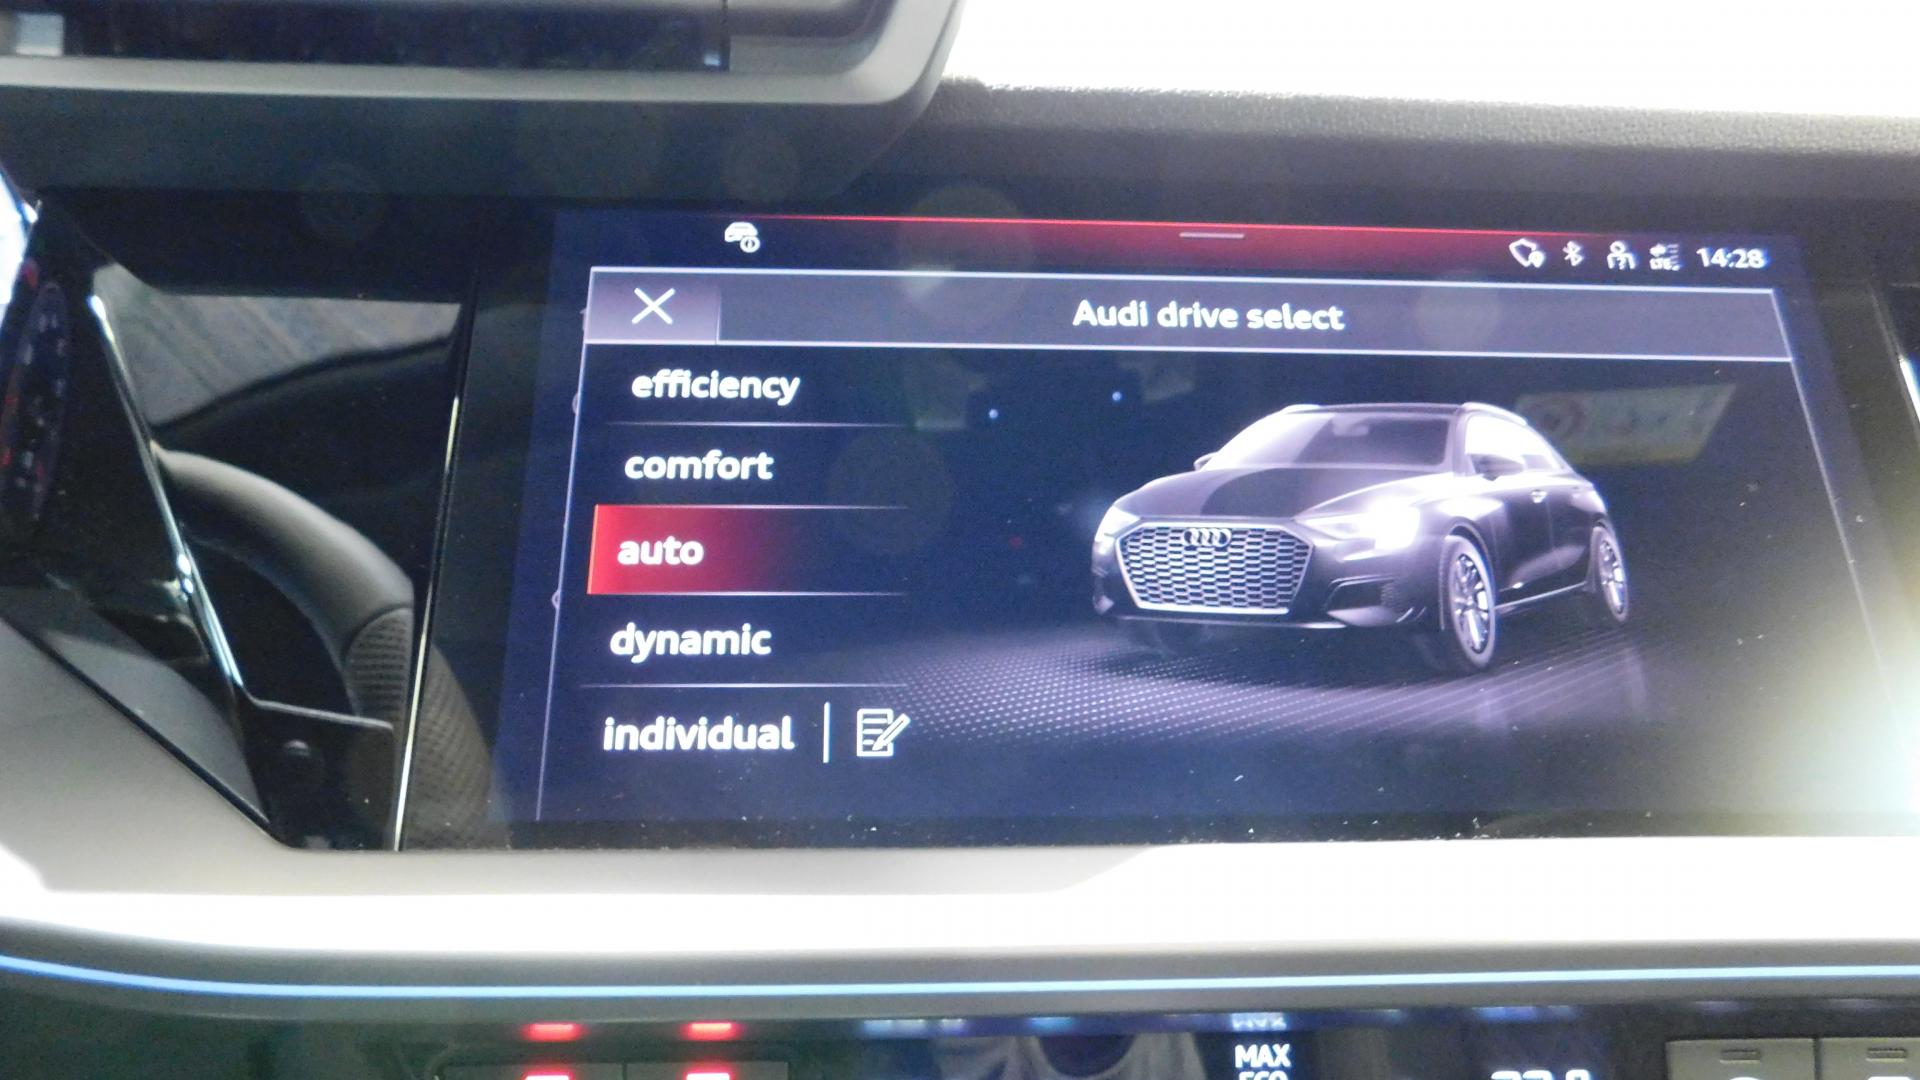 Brochure accessoires Audi A8 - Frais d'envoi compris - Équipement auto